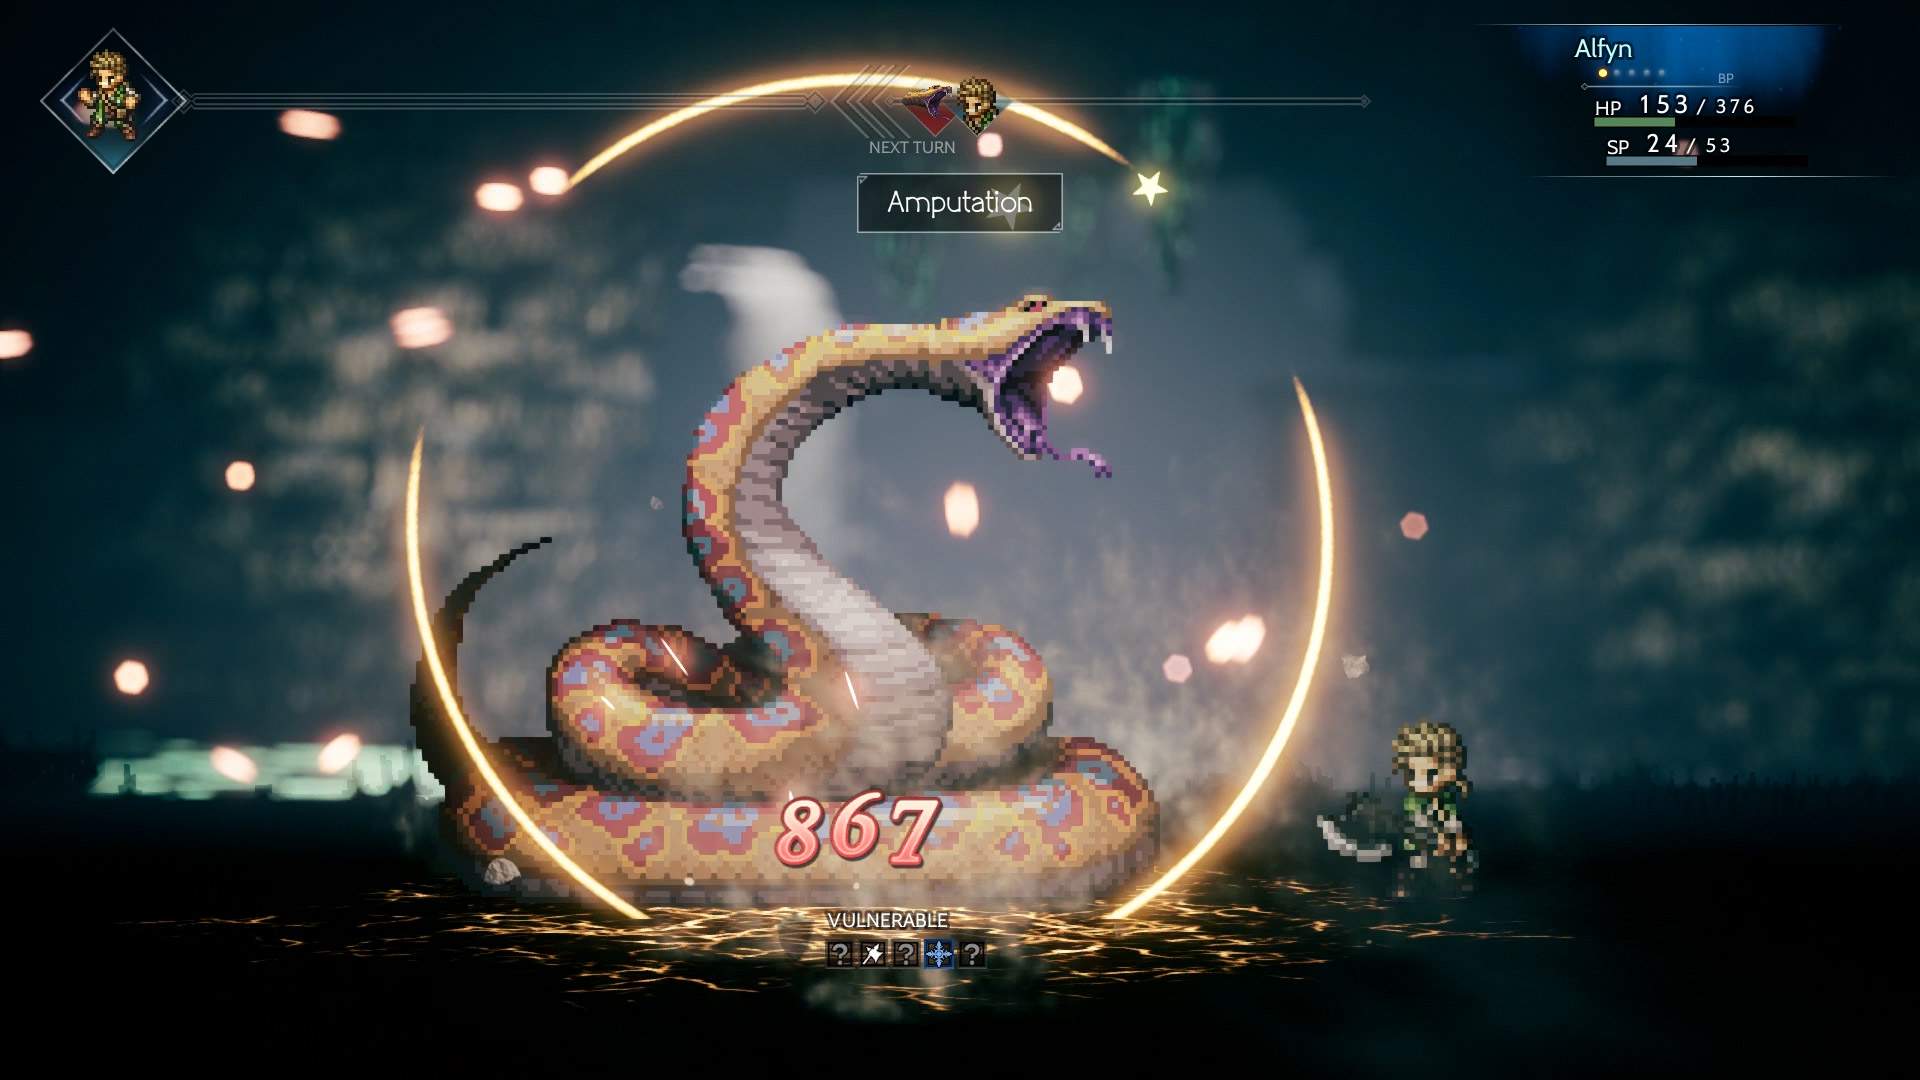 Captura de tela do combate: Alfyn atacando um grande monstro serpentino em uma masmorra.